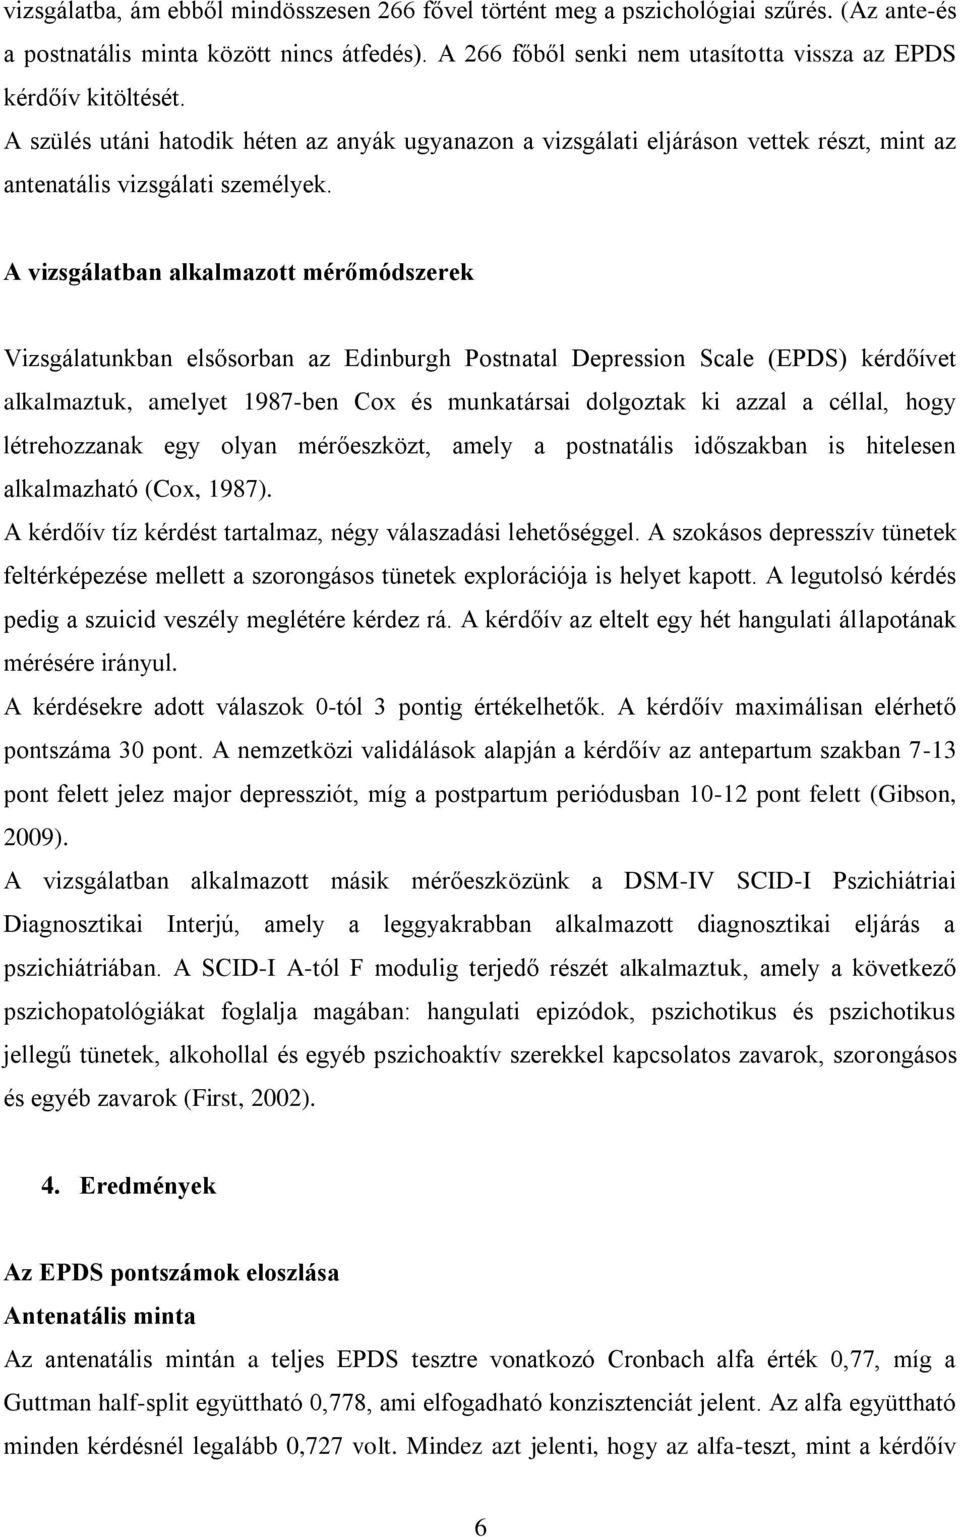 A vizsgálatban alkalmazott mérőmódszerek Vizsgálatunkban elsősorban az Edinburgh Postnatal Depression Scale (EPDS) kérdőívet alkalmaztuk, amelyet 1987-ben Cox és munkatársai dolgoztak ki azzal a